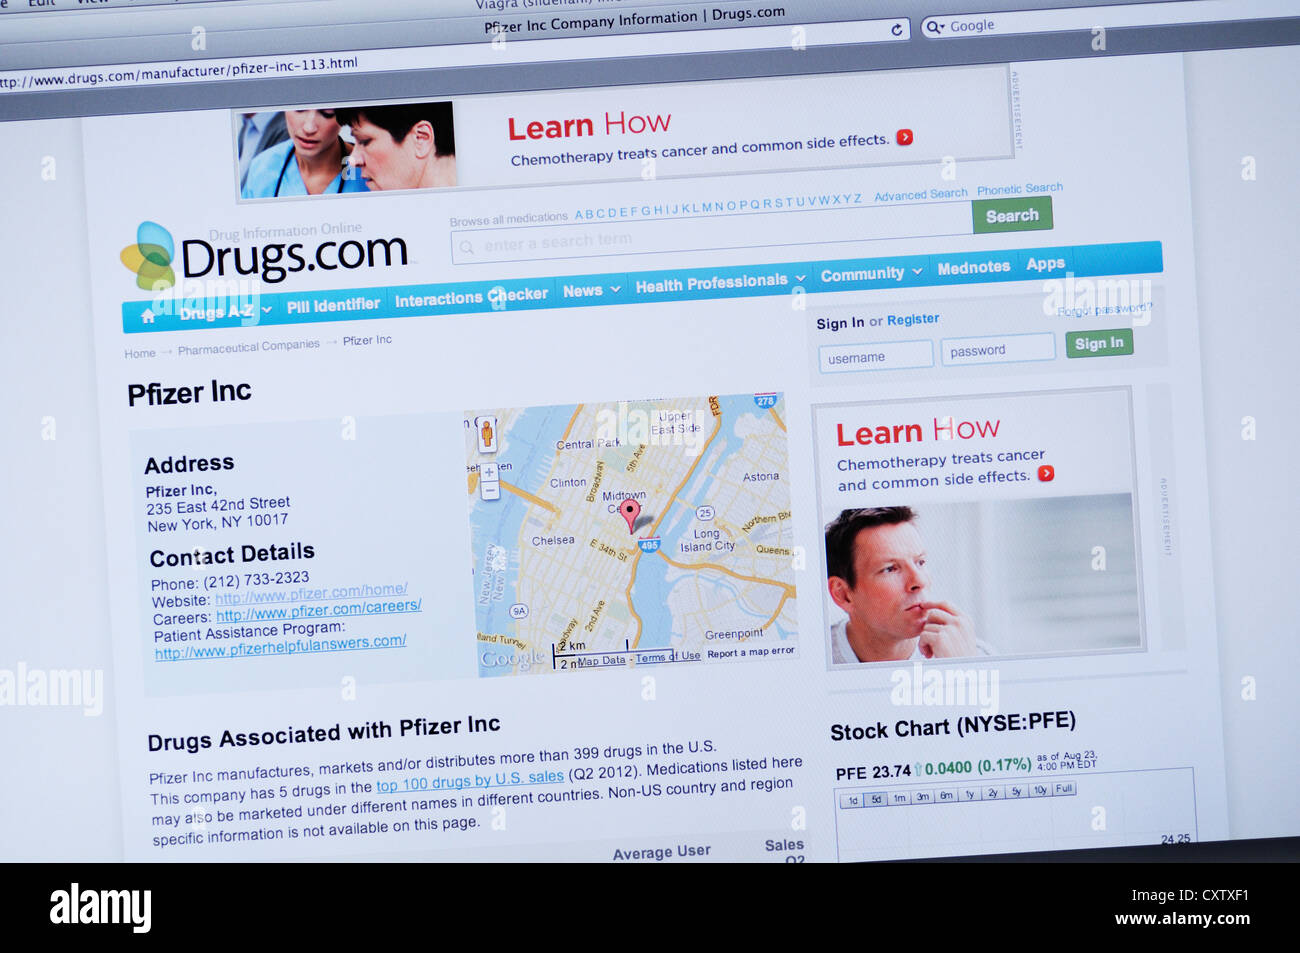 Sito web Drugs.com - online Pfizer informazioni sulla società Foto Stock